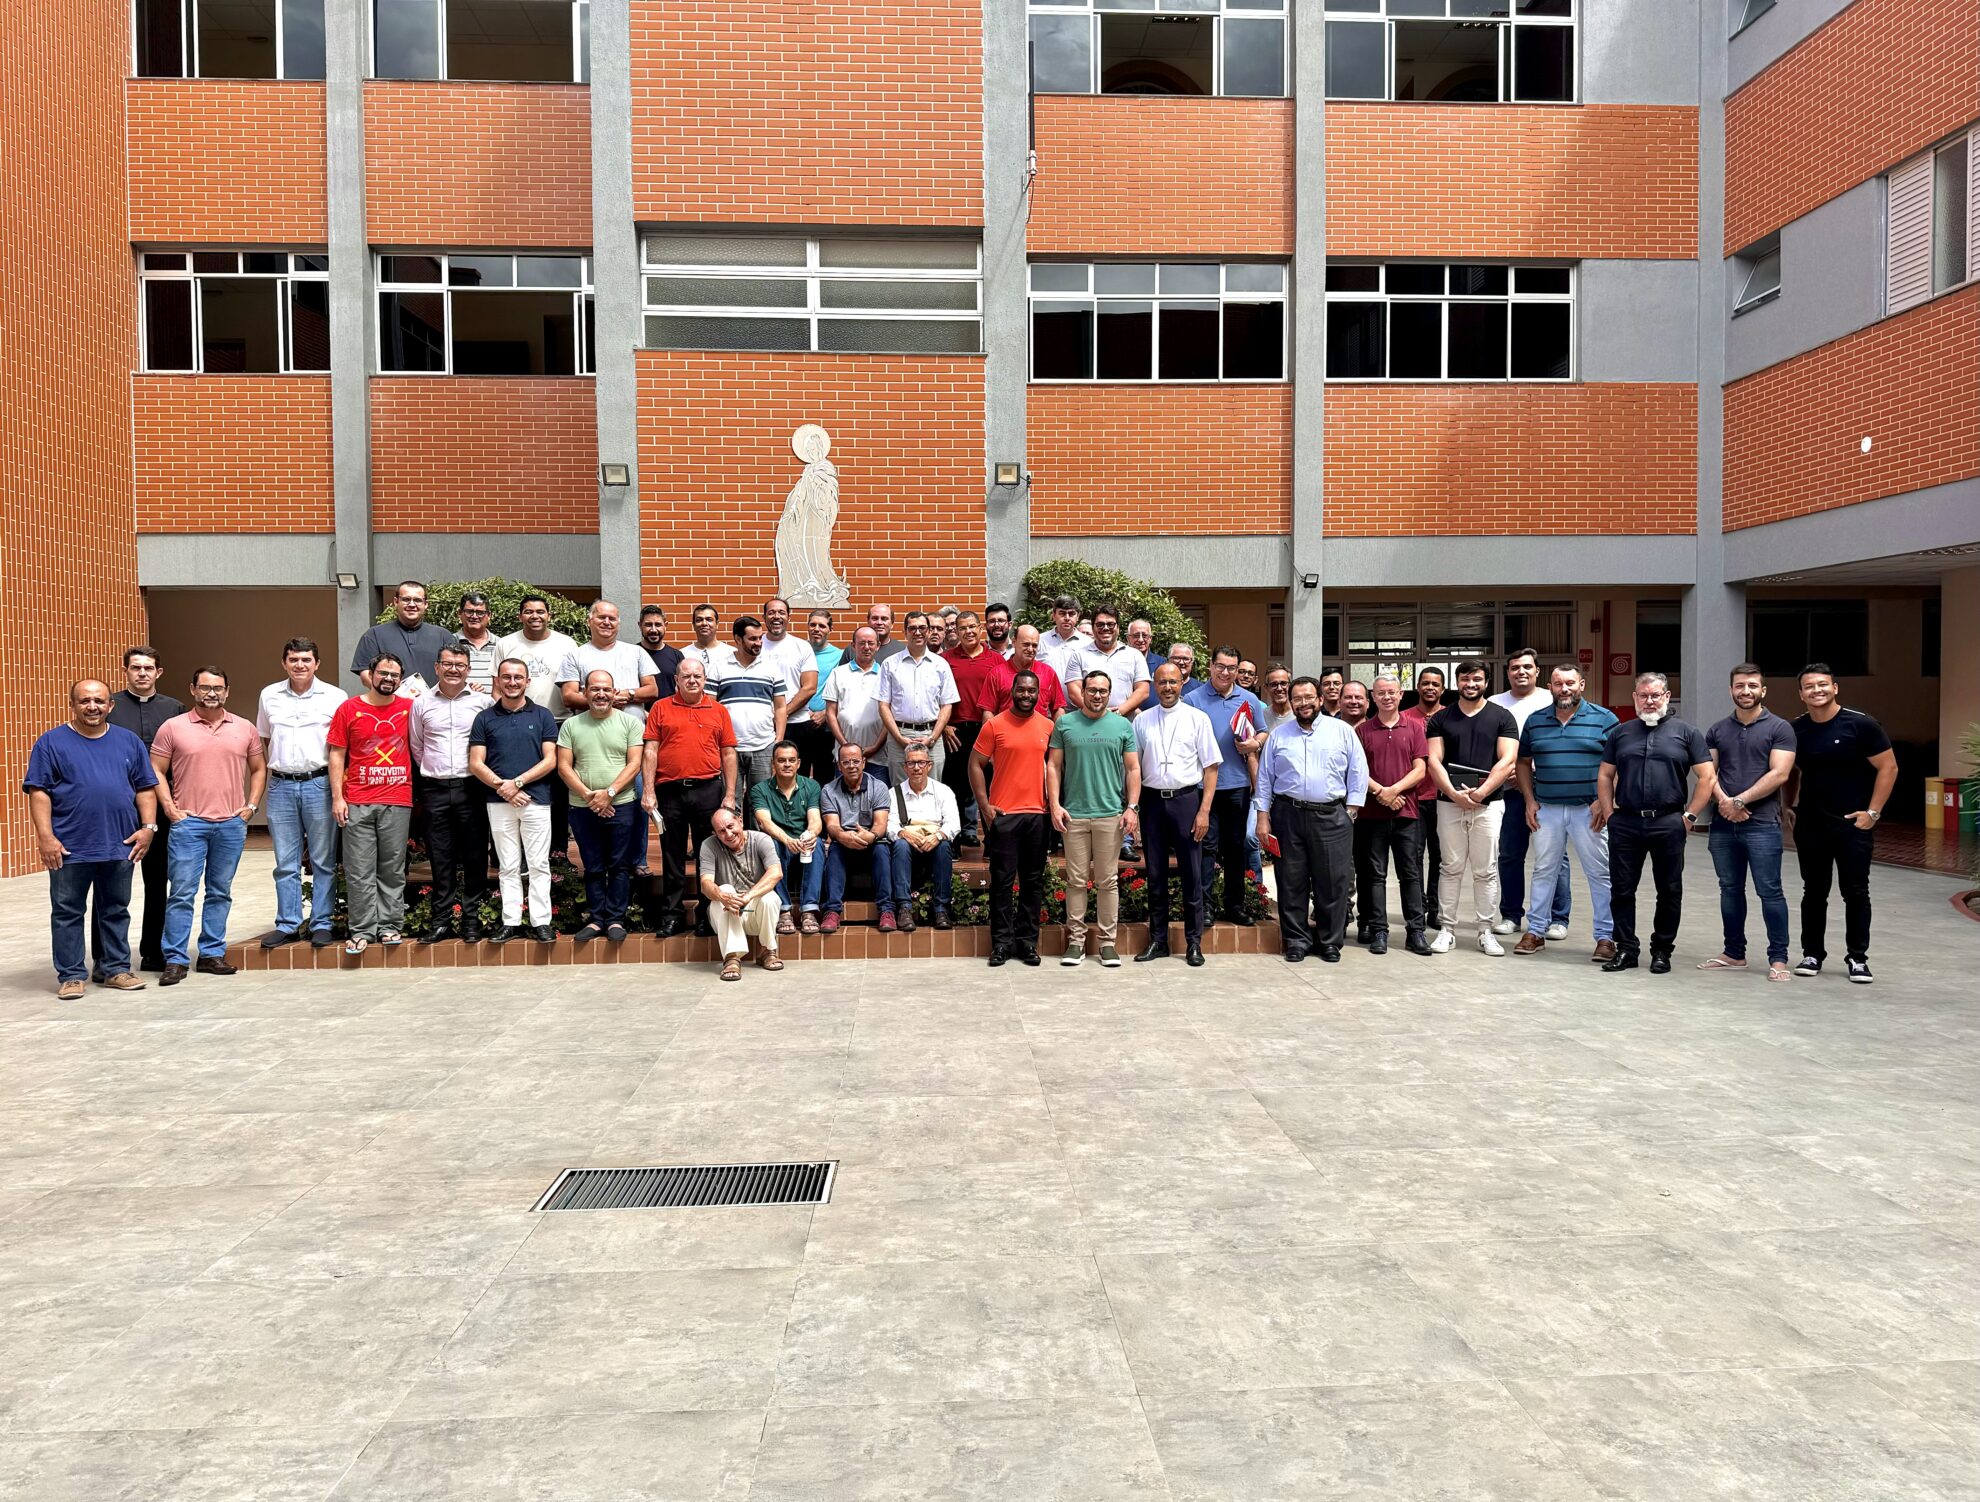 Notícia: Clero diocesano de Divinópolis participa de encontro de atualização, em Belo Horizonte